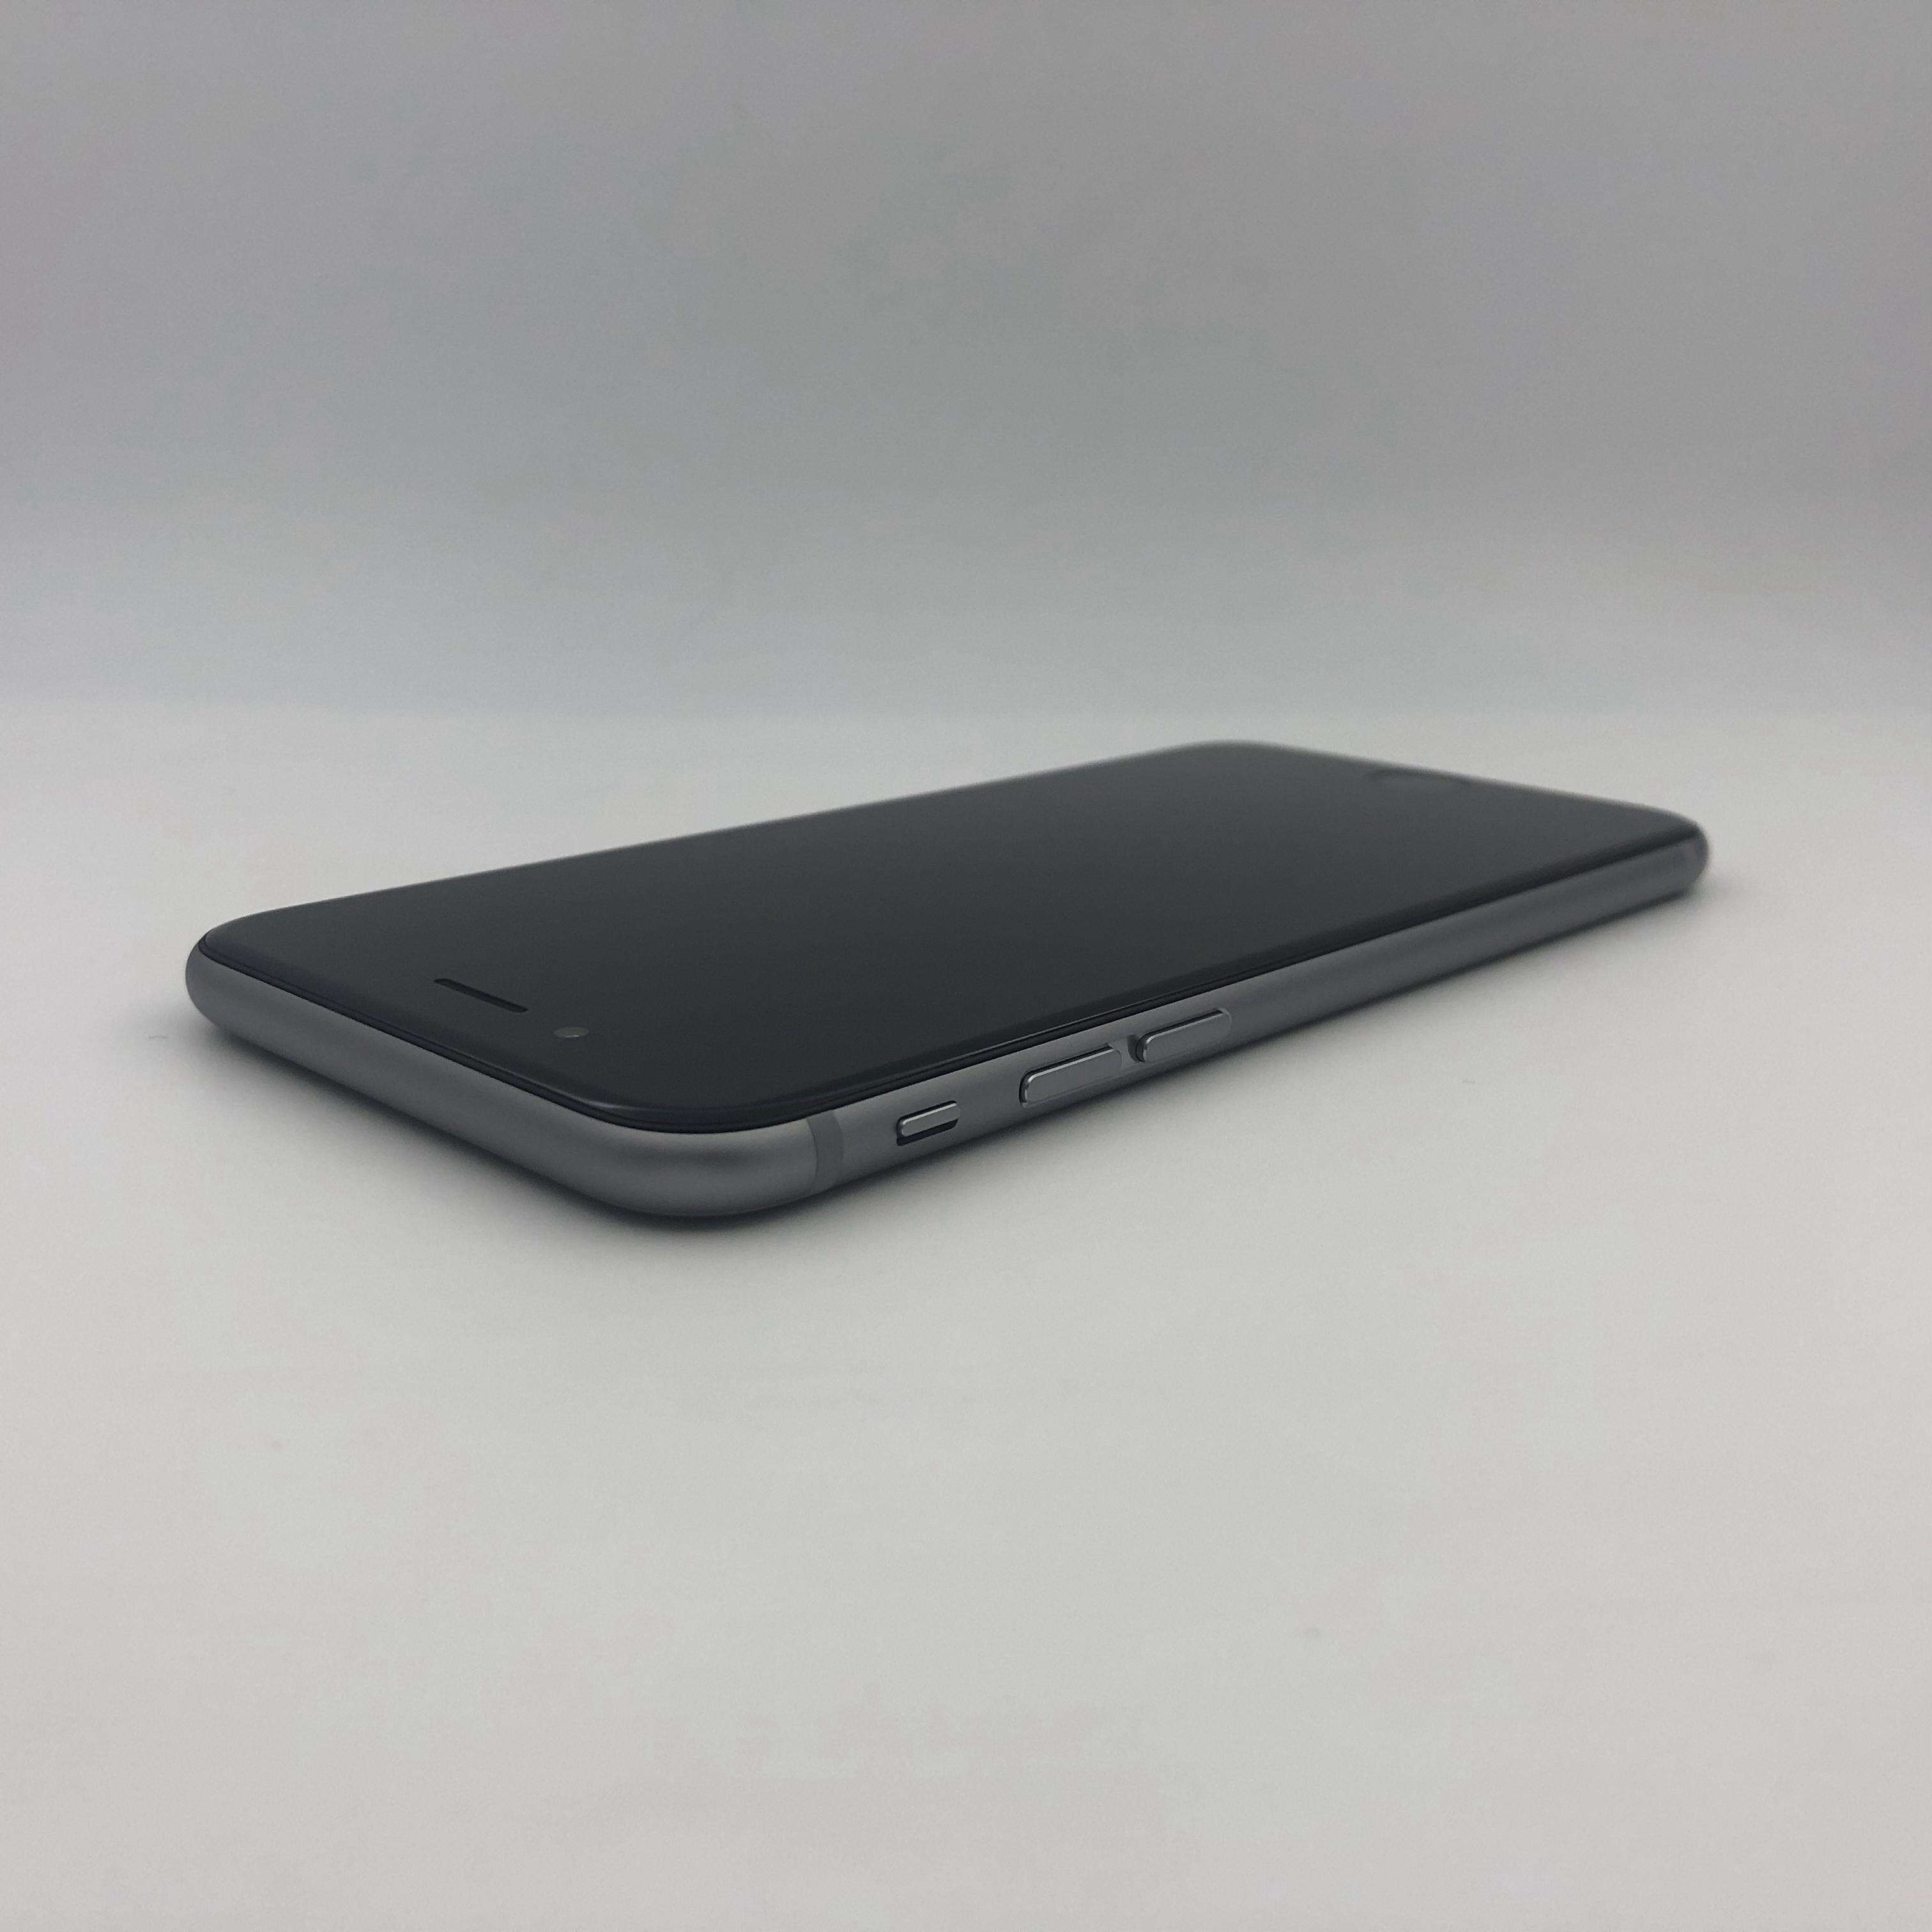 iPhone 6 深空灰色 16G 全网官换